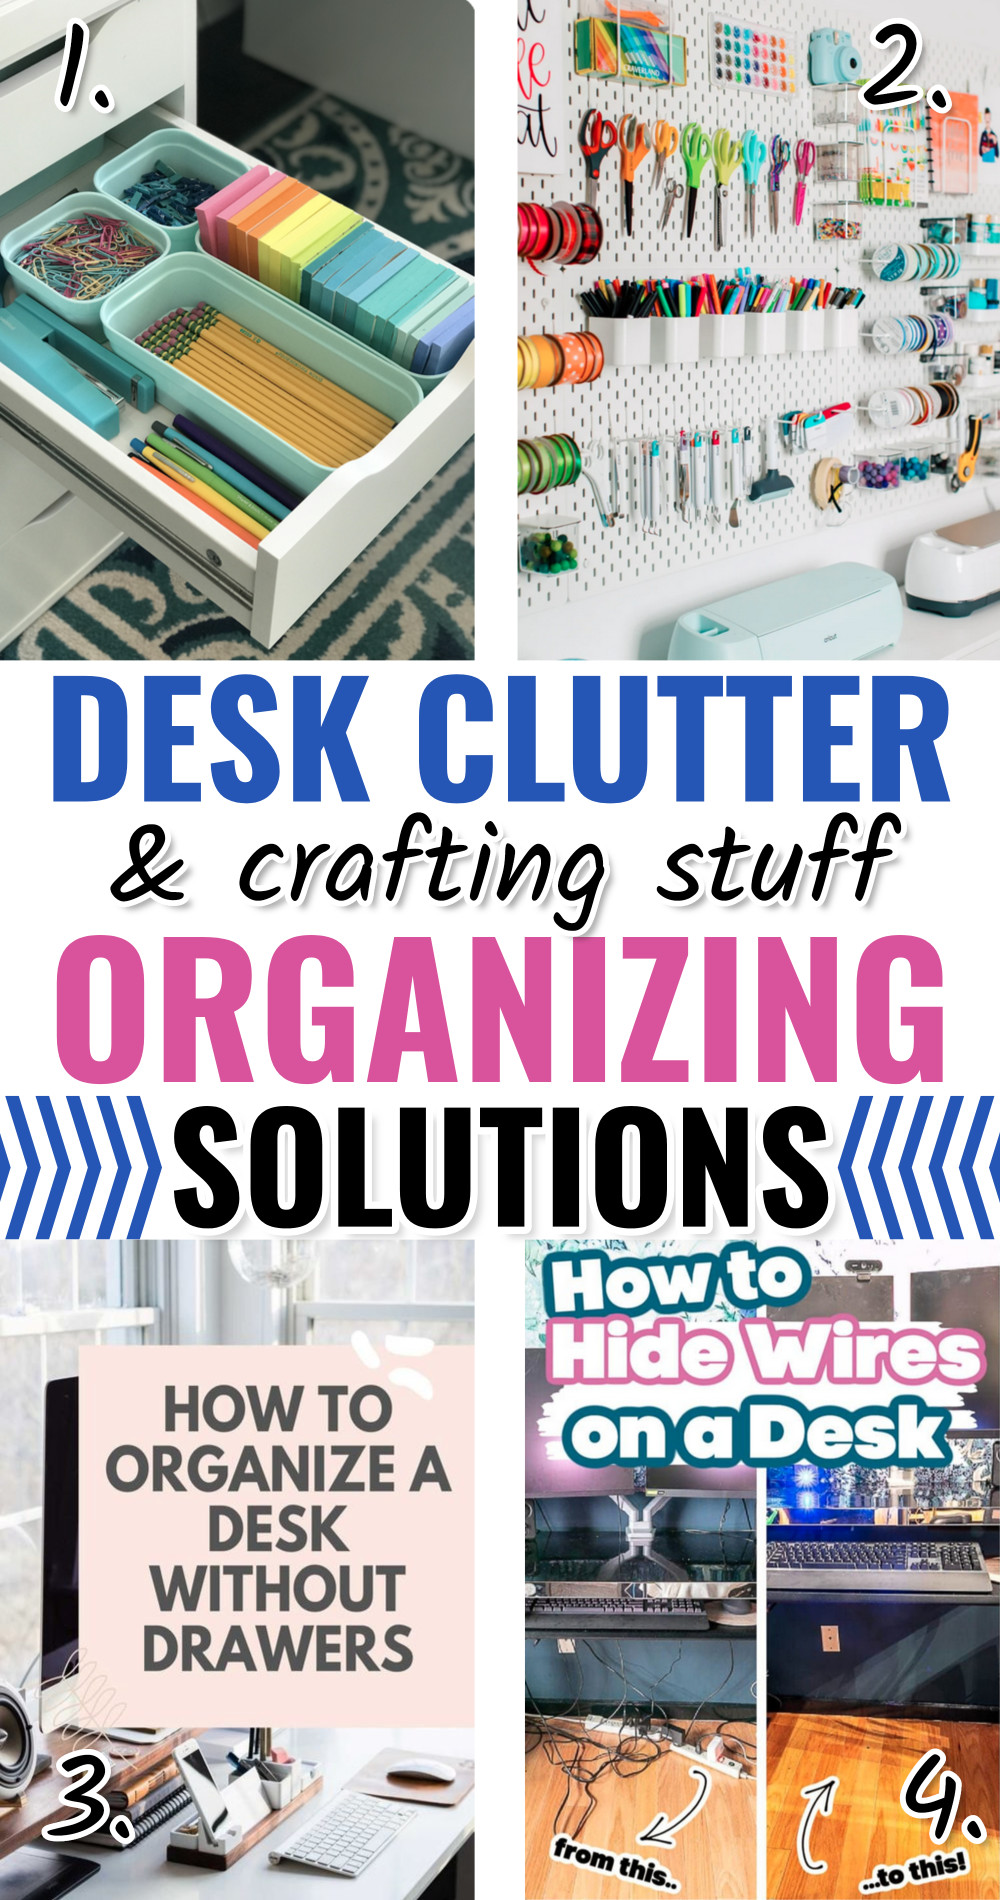 Small office organization ideas for computer desk clutter, teacher desks and craft room supplies